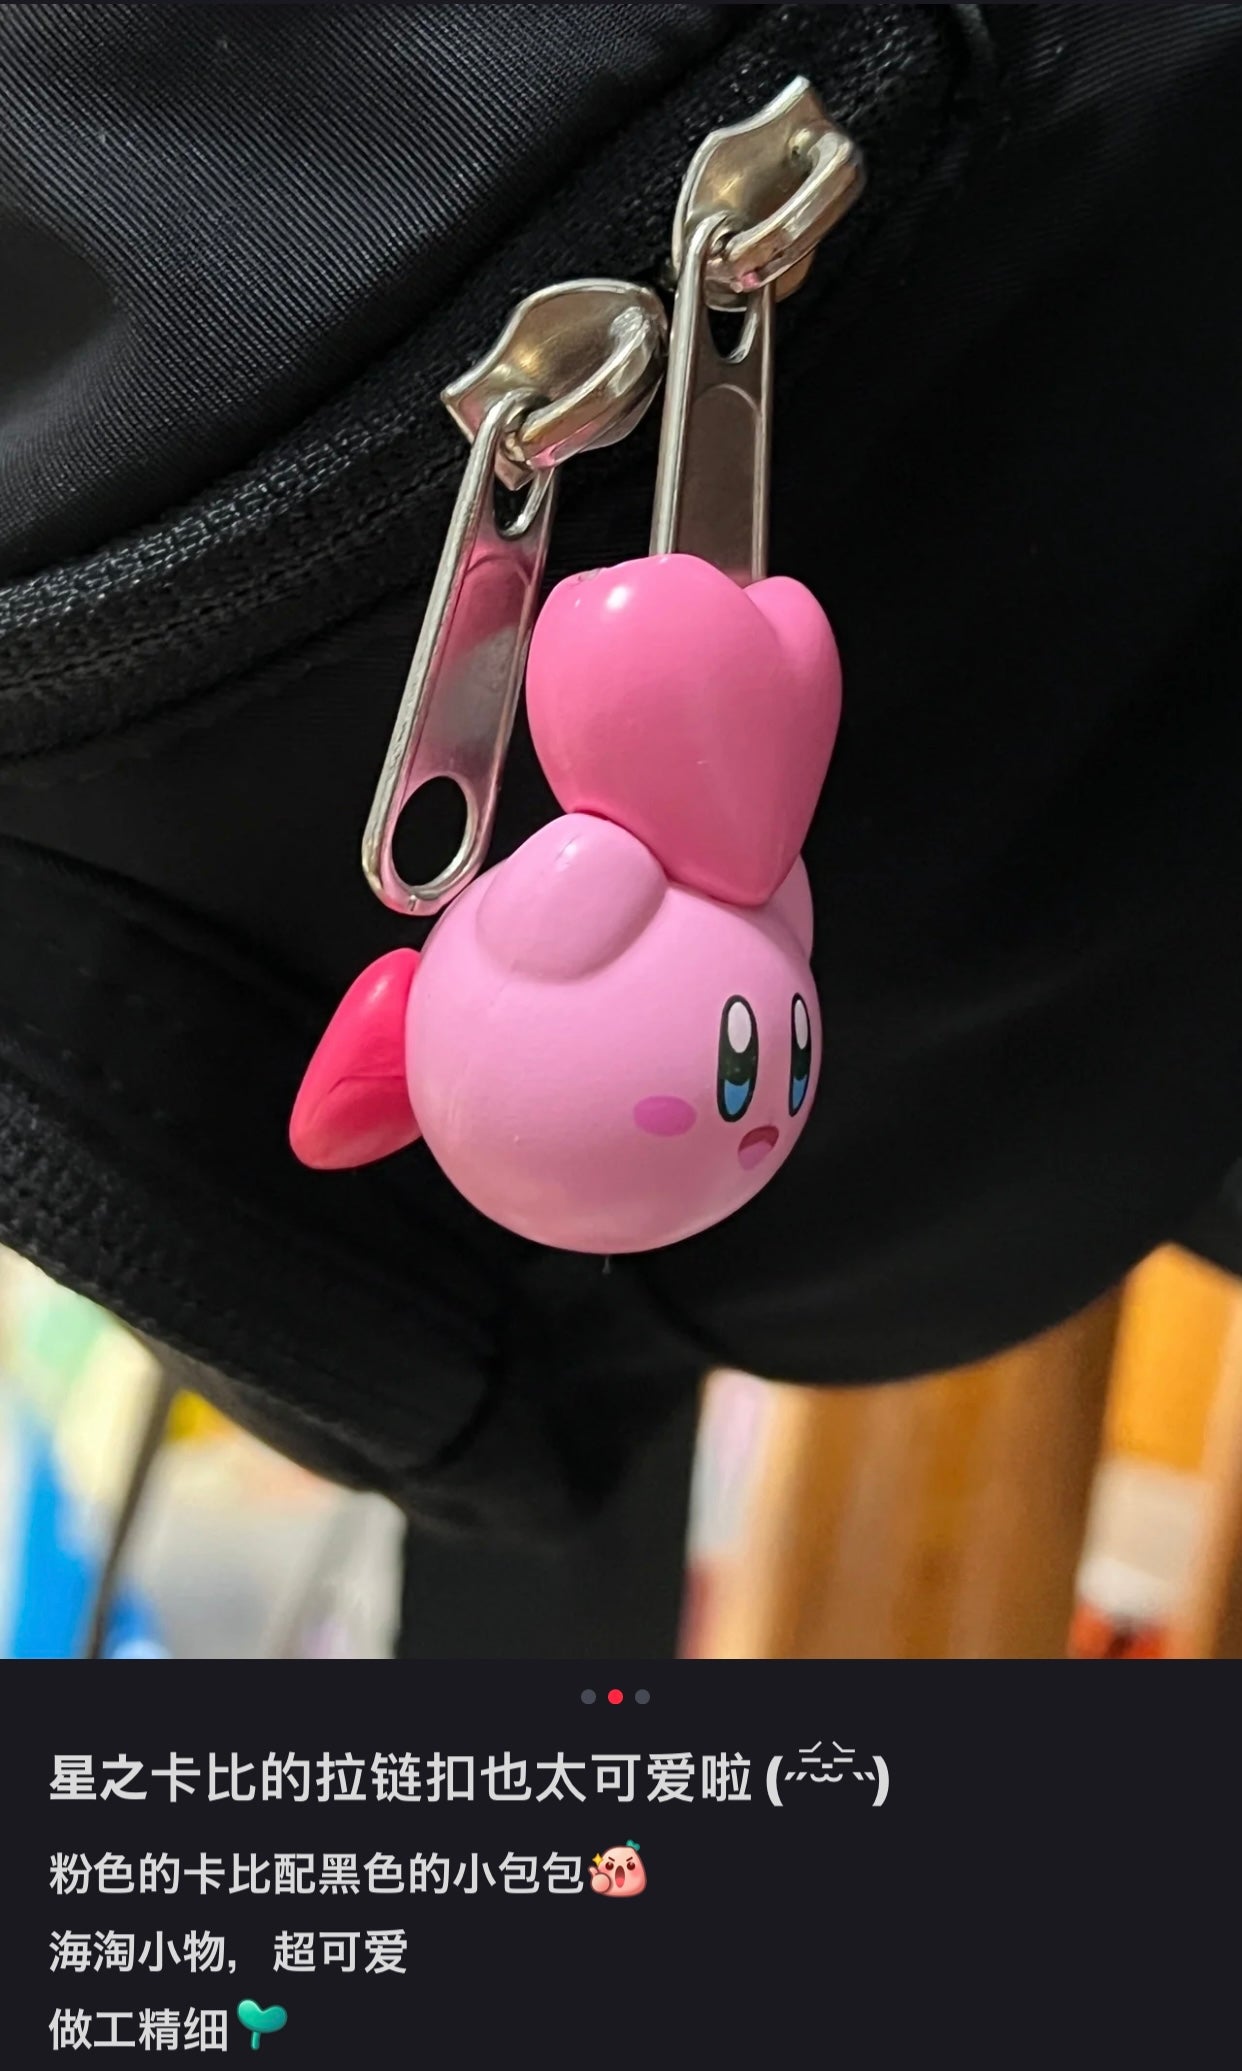 Kirby｜可爱拉链扣/拉链装饰/迷你包挂｜幅約32mm×高さ約35mm×奥行約30mm